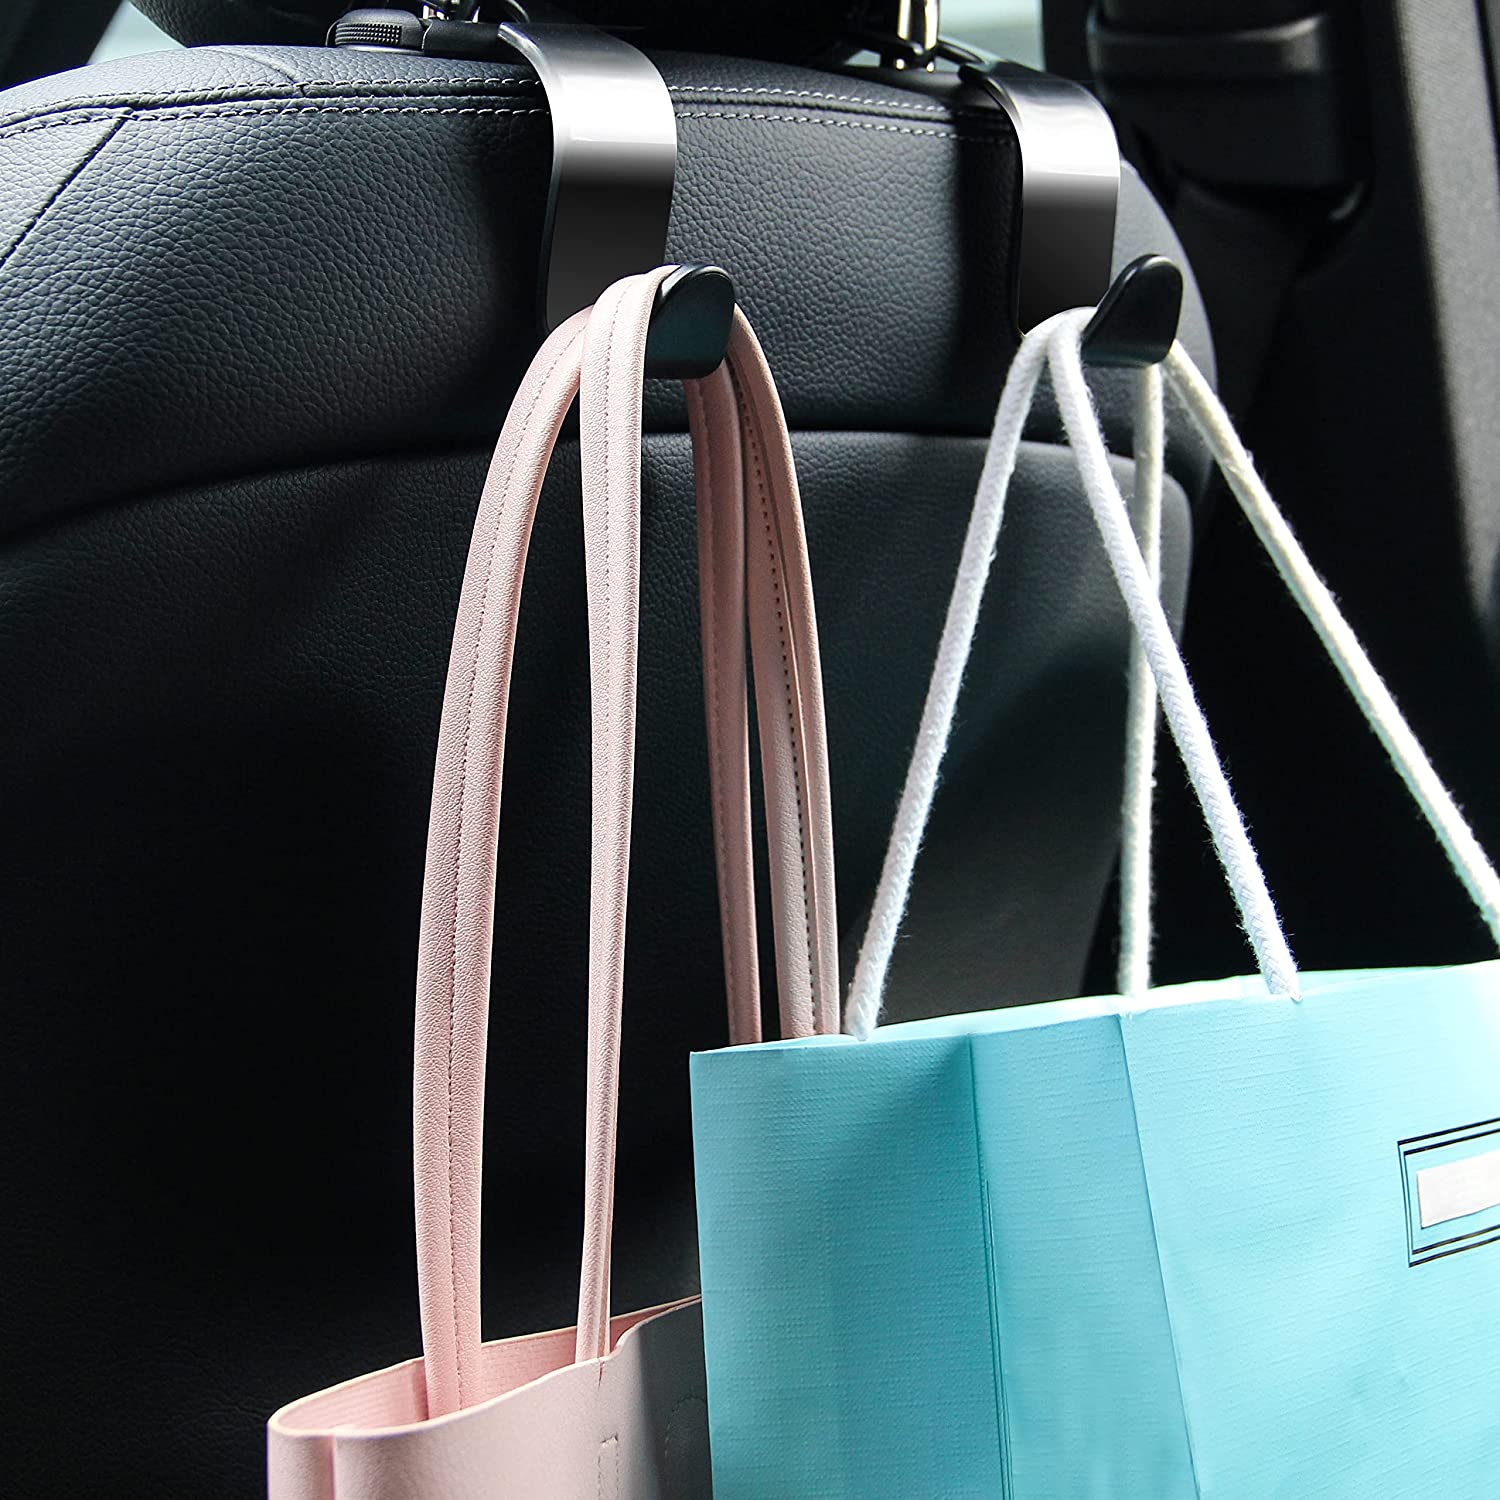 Ganchos multifuncionais pretos para assento de carro presos ao apoio de cabeça, segurando uma mala de mão e um saco de compras